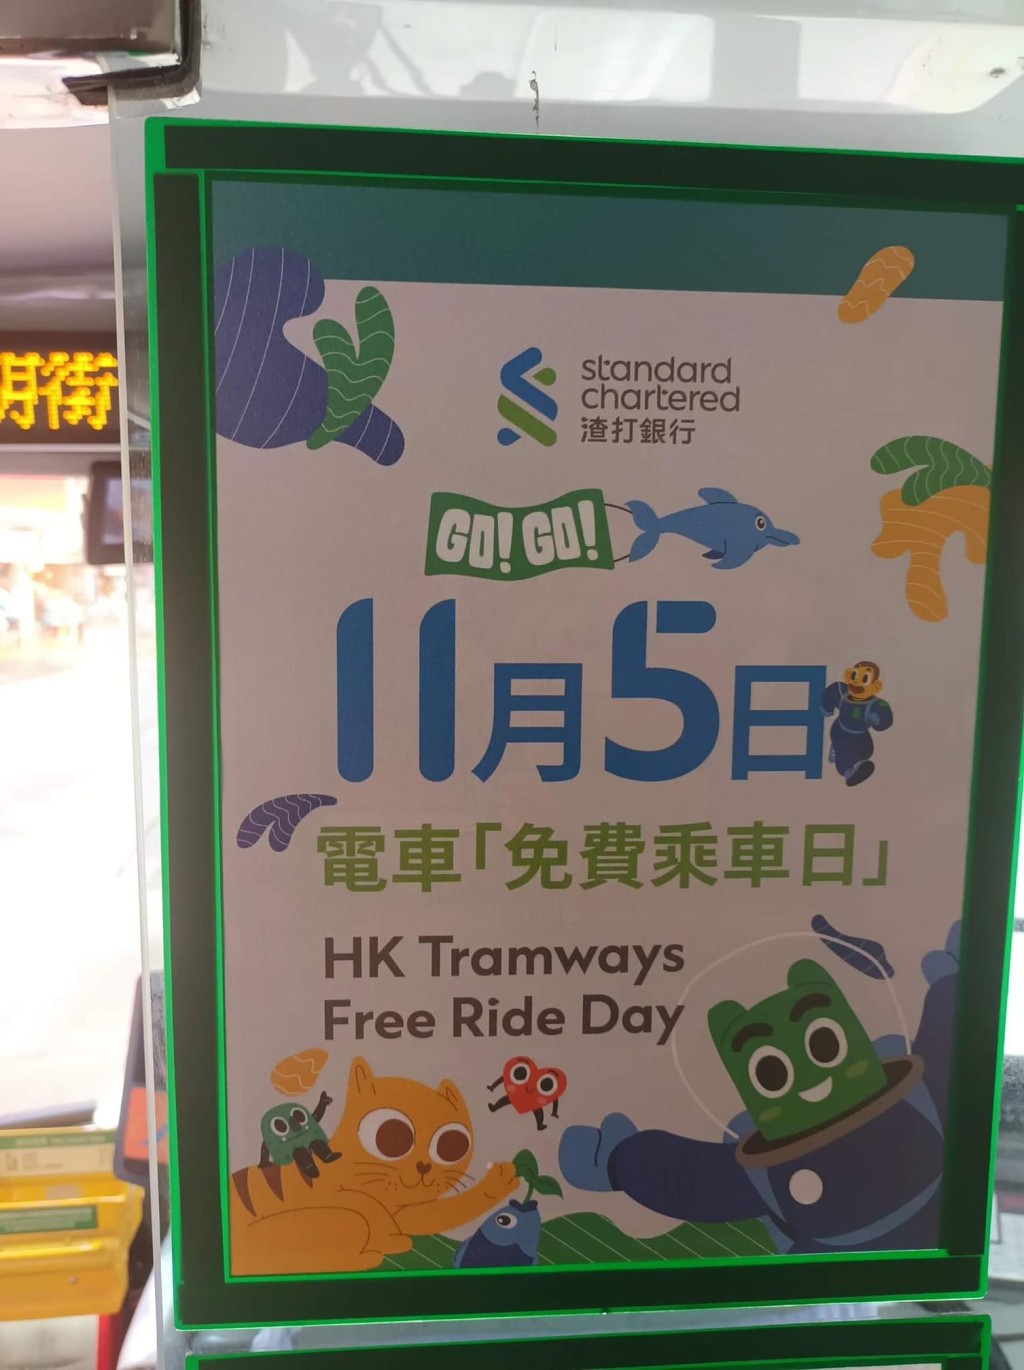 今天是渣打香港免費電車日。網圖